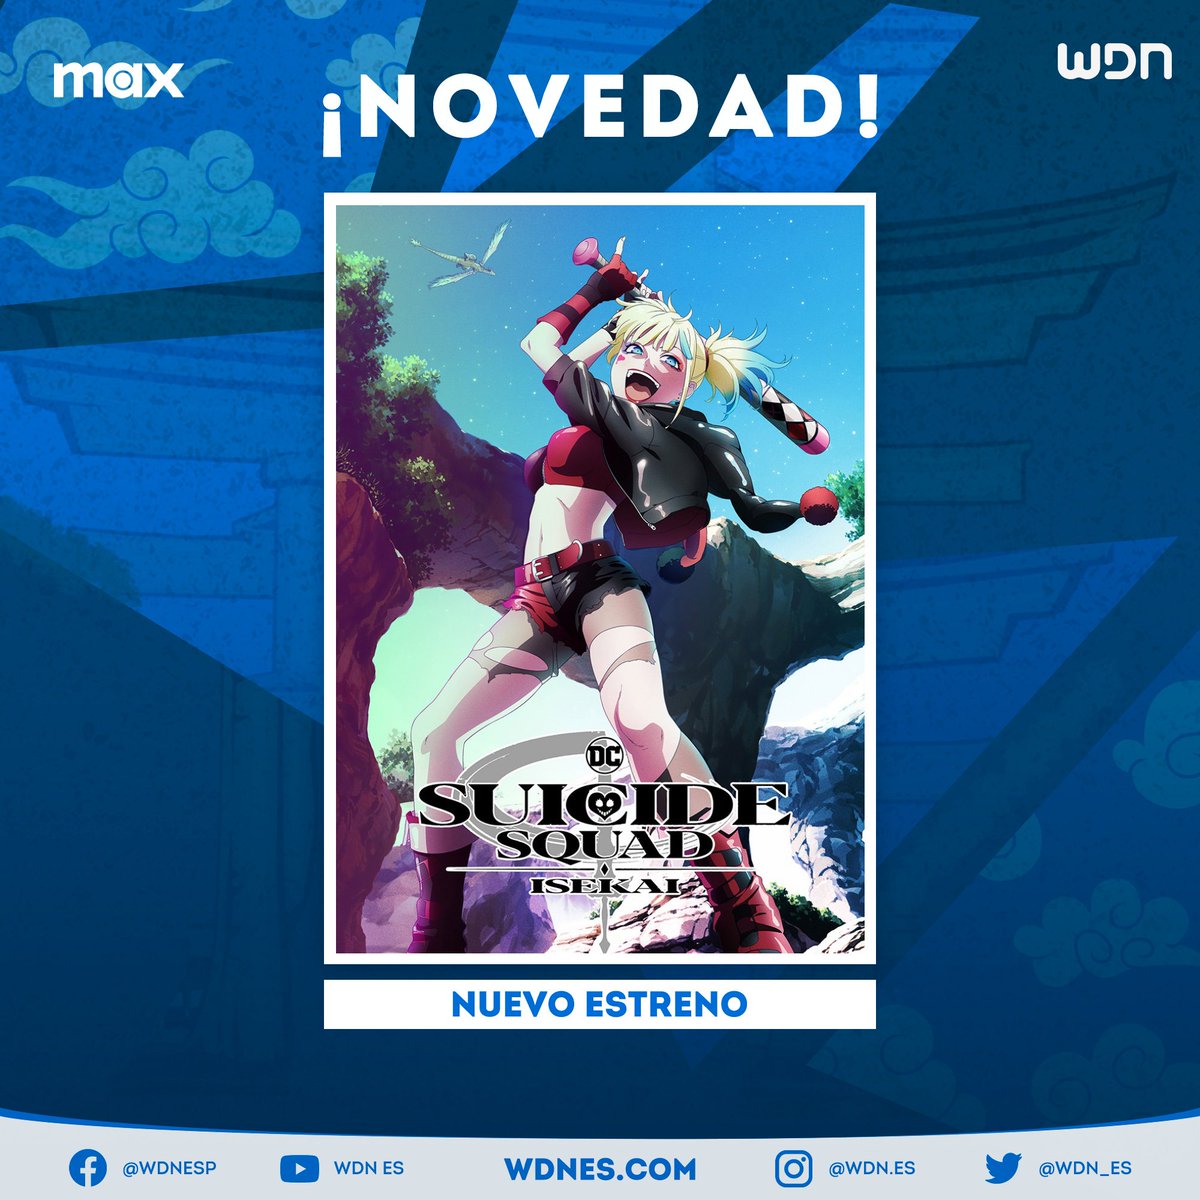 📺 | Anime
El anime 'Suicide Squad Isekai' se estrenará de forma exclusiva en occidente mediante Max según informa su contraparte europea. Se desconoce si la serie llegará de igual manera en Adult Swim para nuestro territorio. #SuicideSquadIsekai #Anime #SuicideSquad